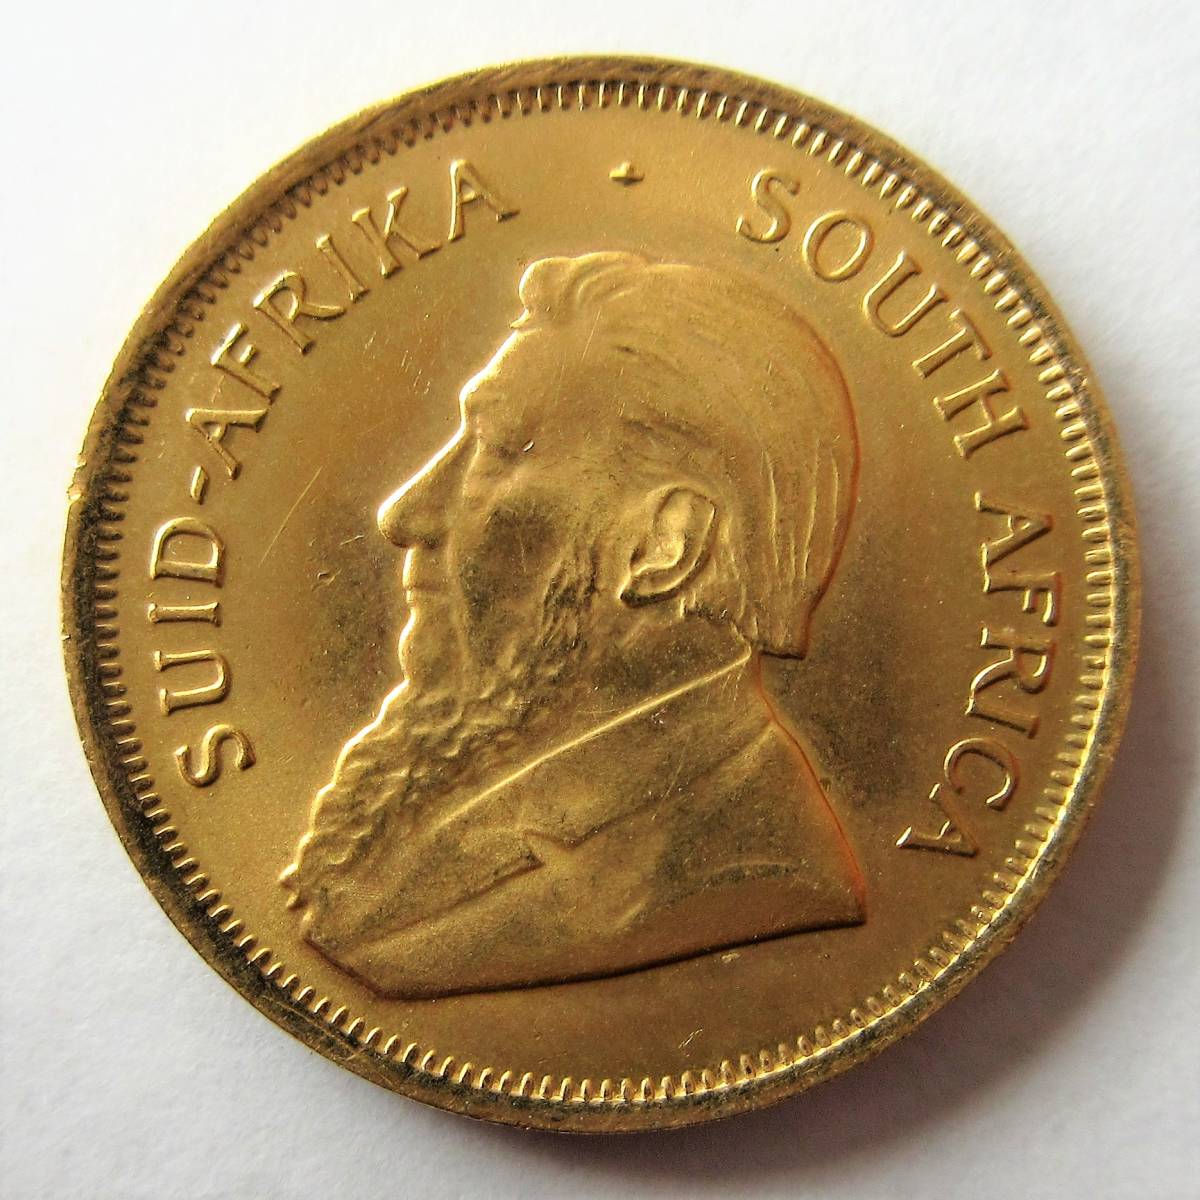 南アフリカ 1/4クルーガーランド金貨(1/4oz KRUGERRAND) 品位K22/0.917Gold 1985年 21.90mm 8.50g KM#106 未使用の画像1